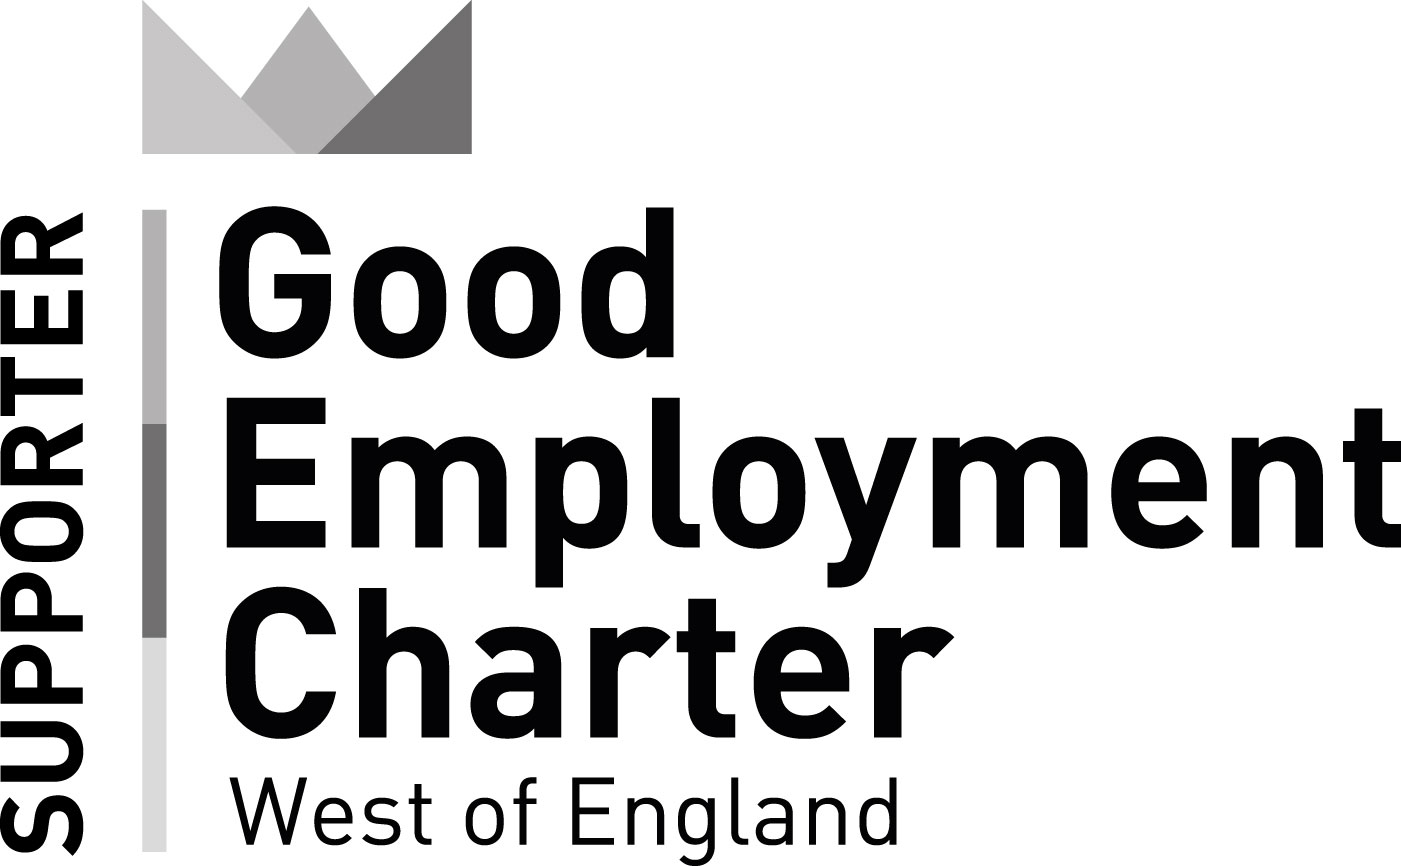 Good Employment Charter